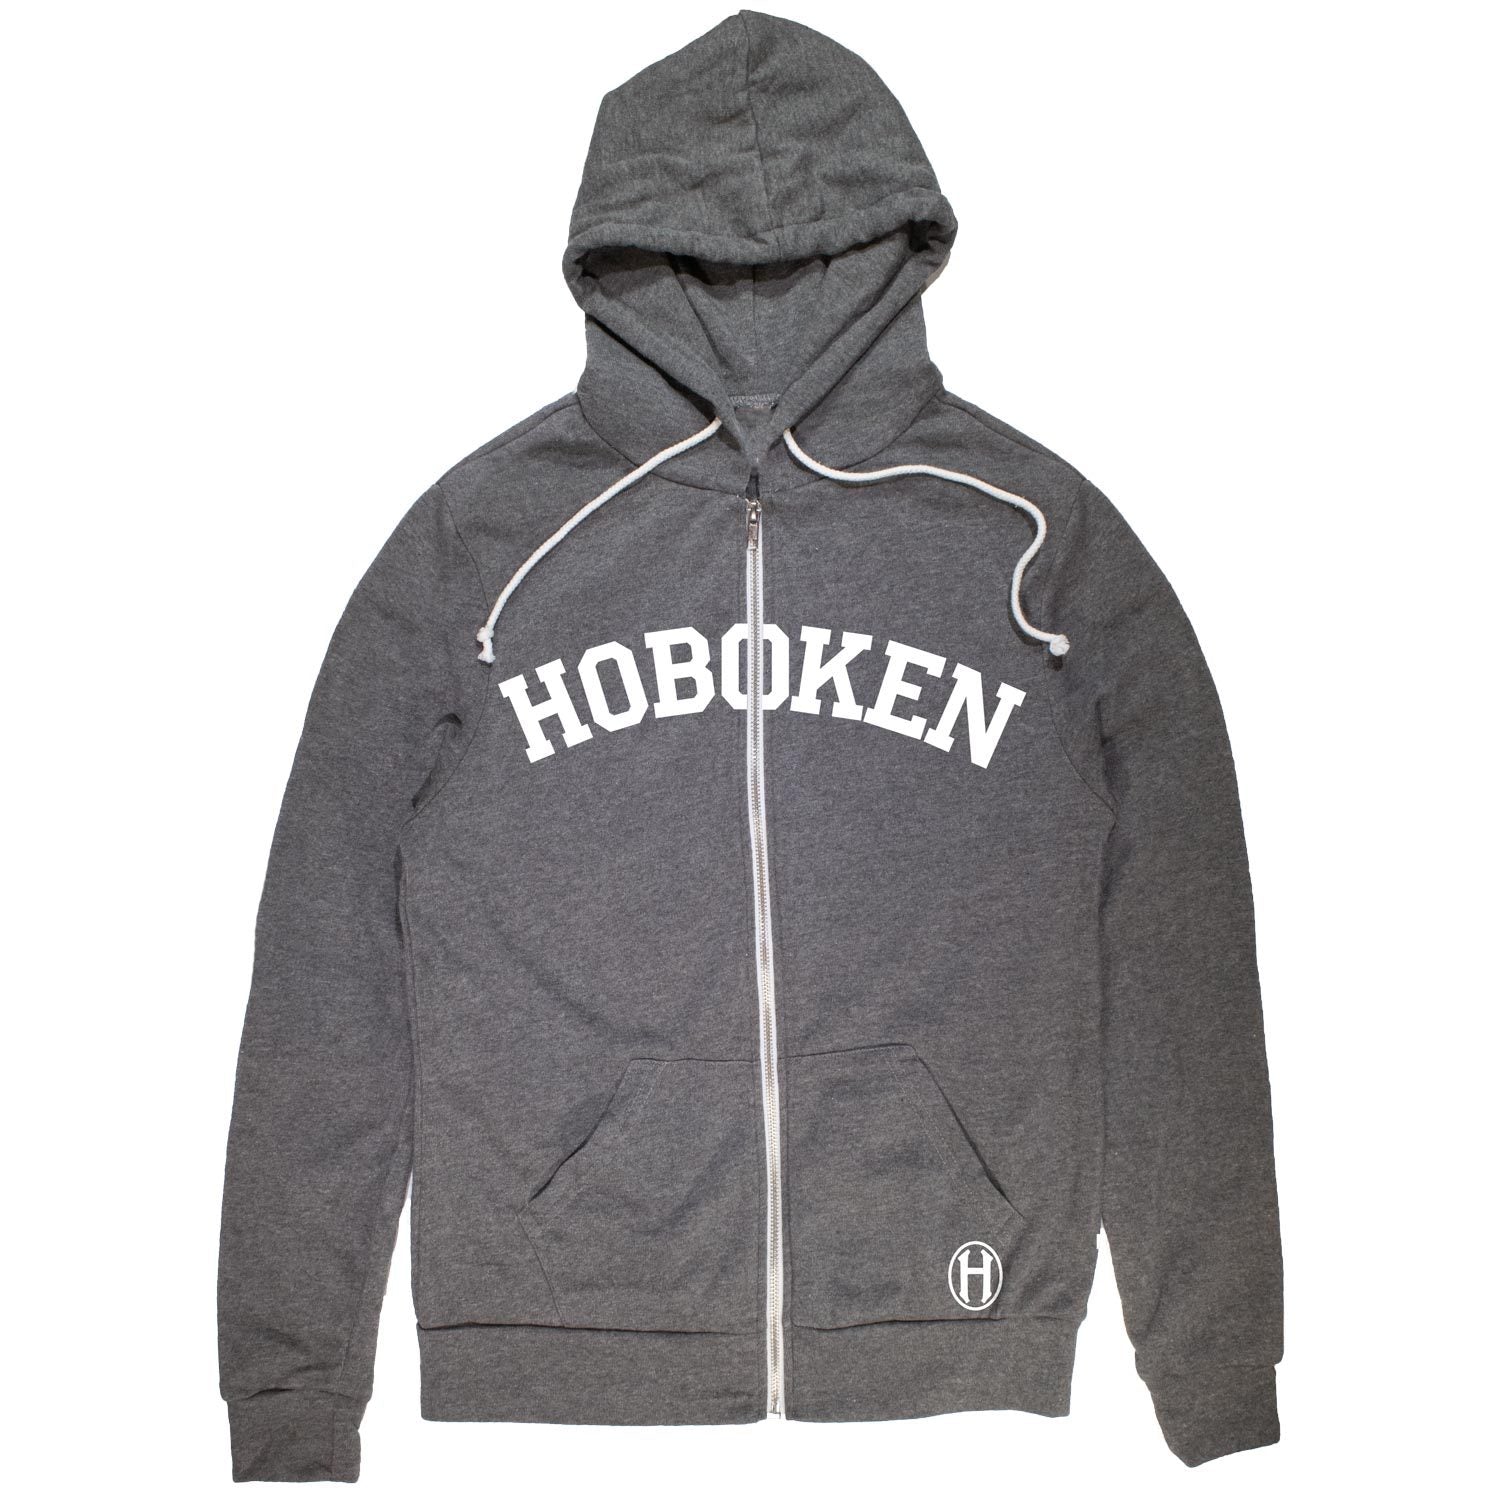 Hoboken Classic Vintage Inspired Zip Up Hoodie with retro Hoboken graphic | Solid Threads